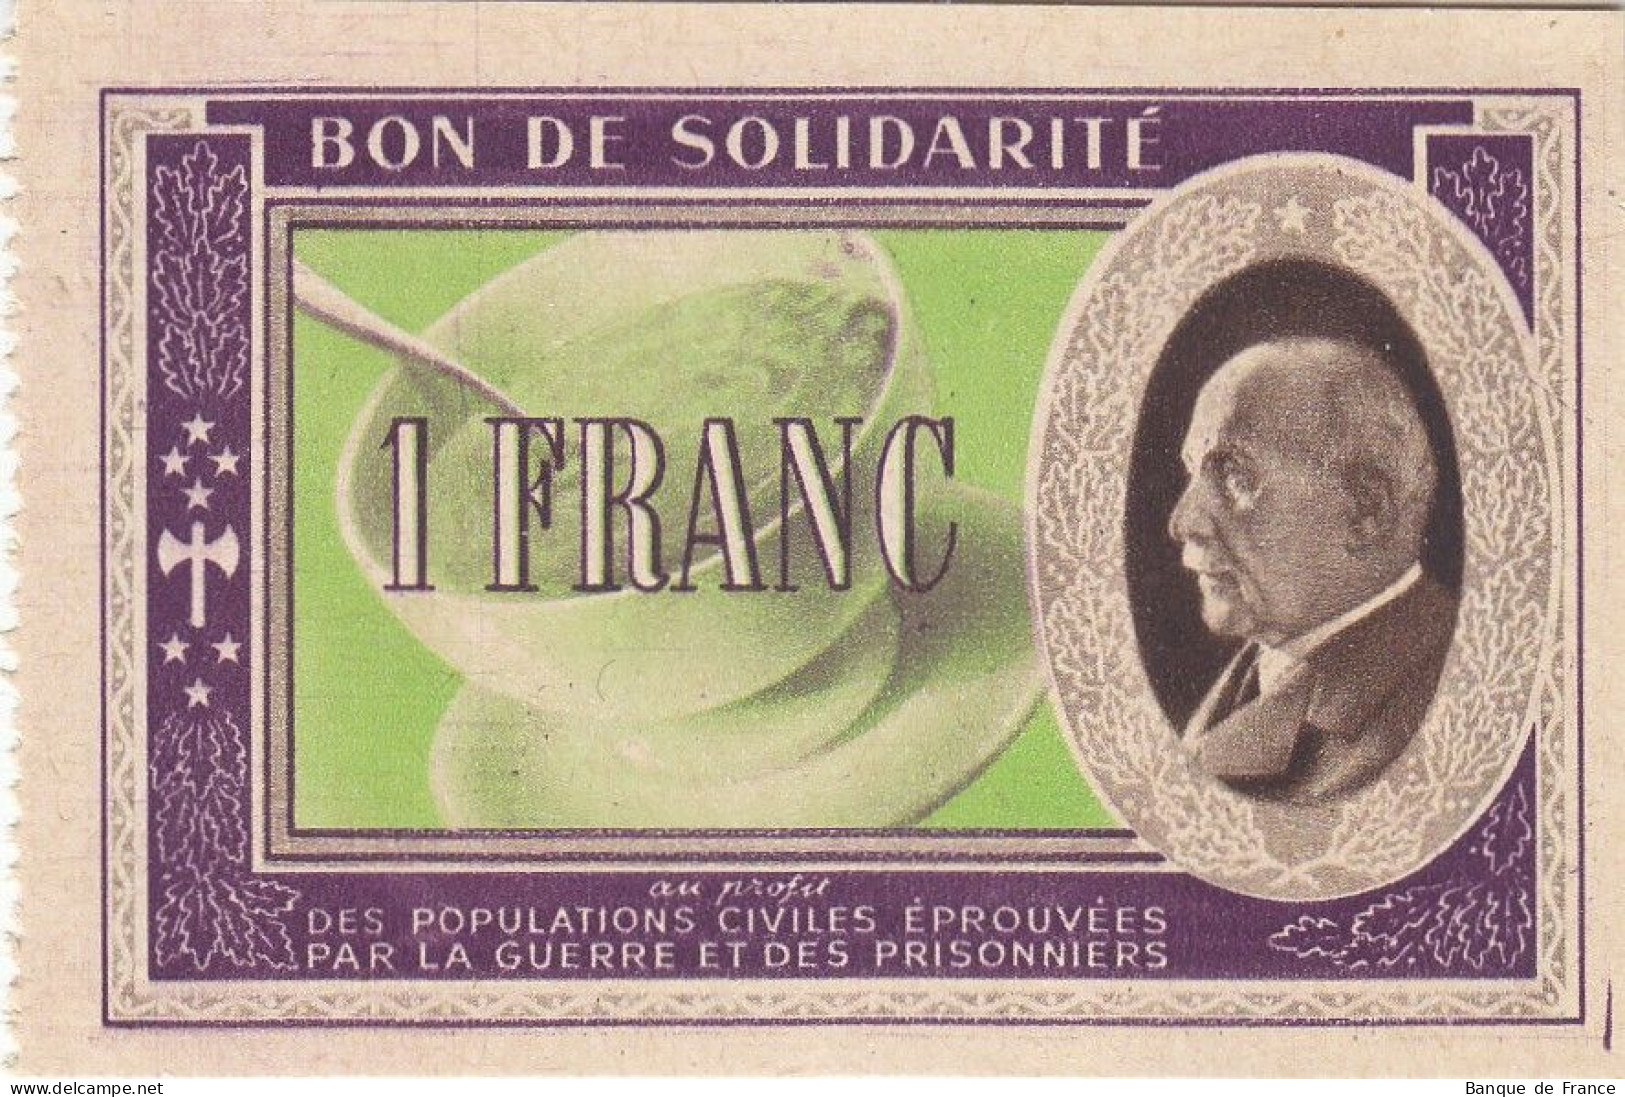 Bon De Solidarité France 1 Franc - Pétain 1941 / 1942 KL.02 - Bons & Nécessité